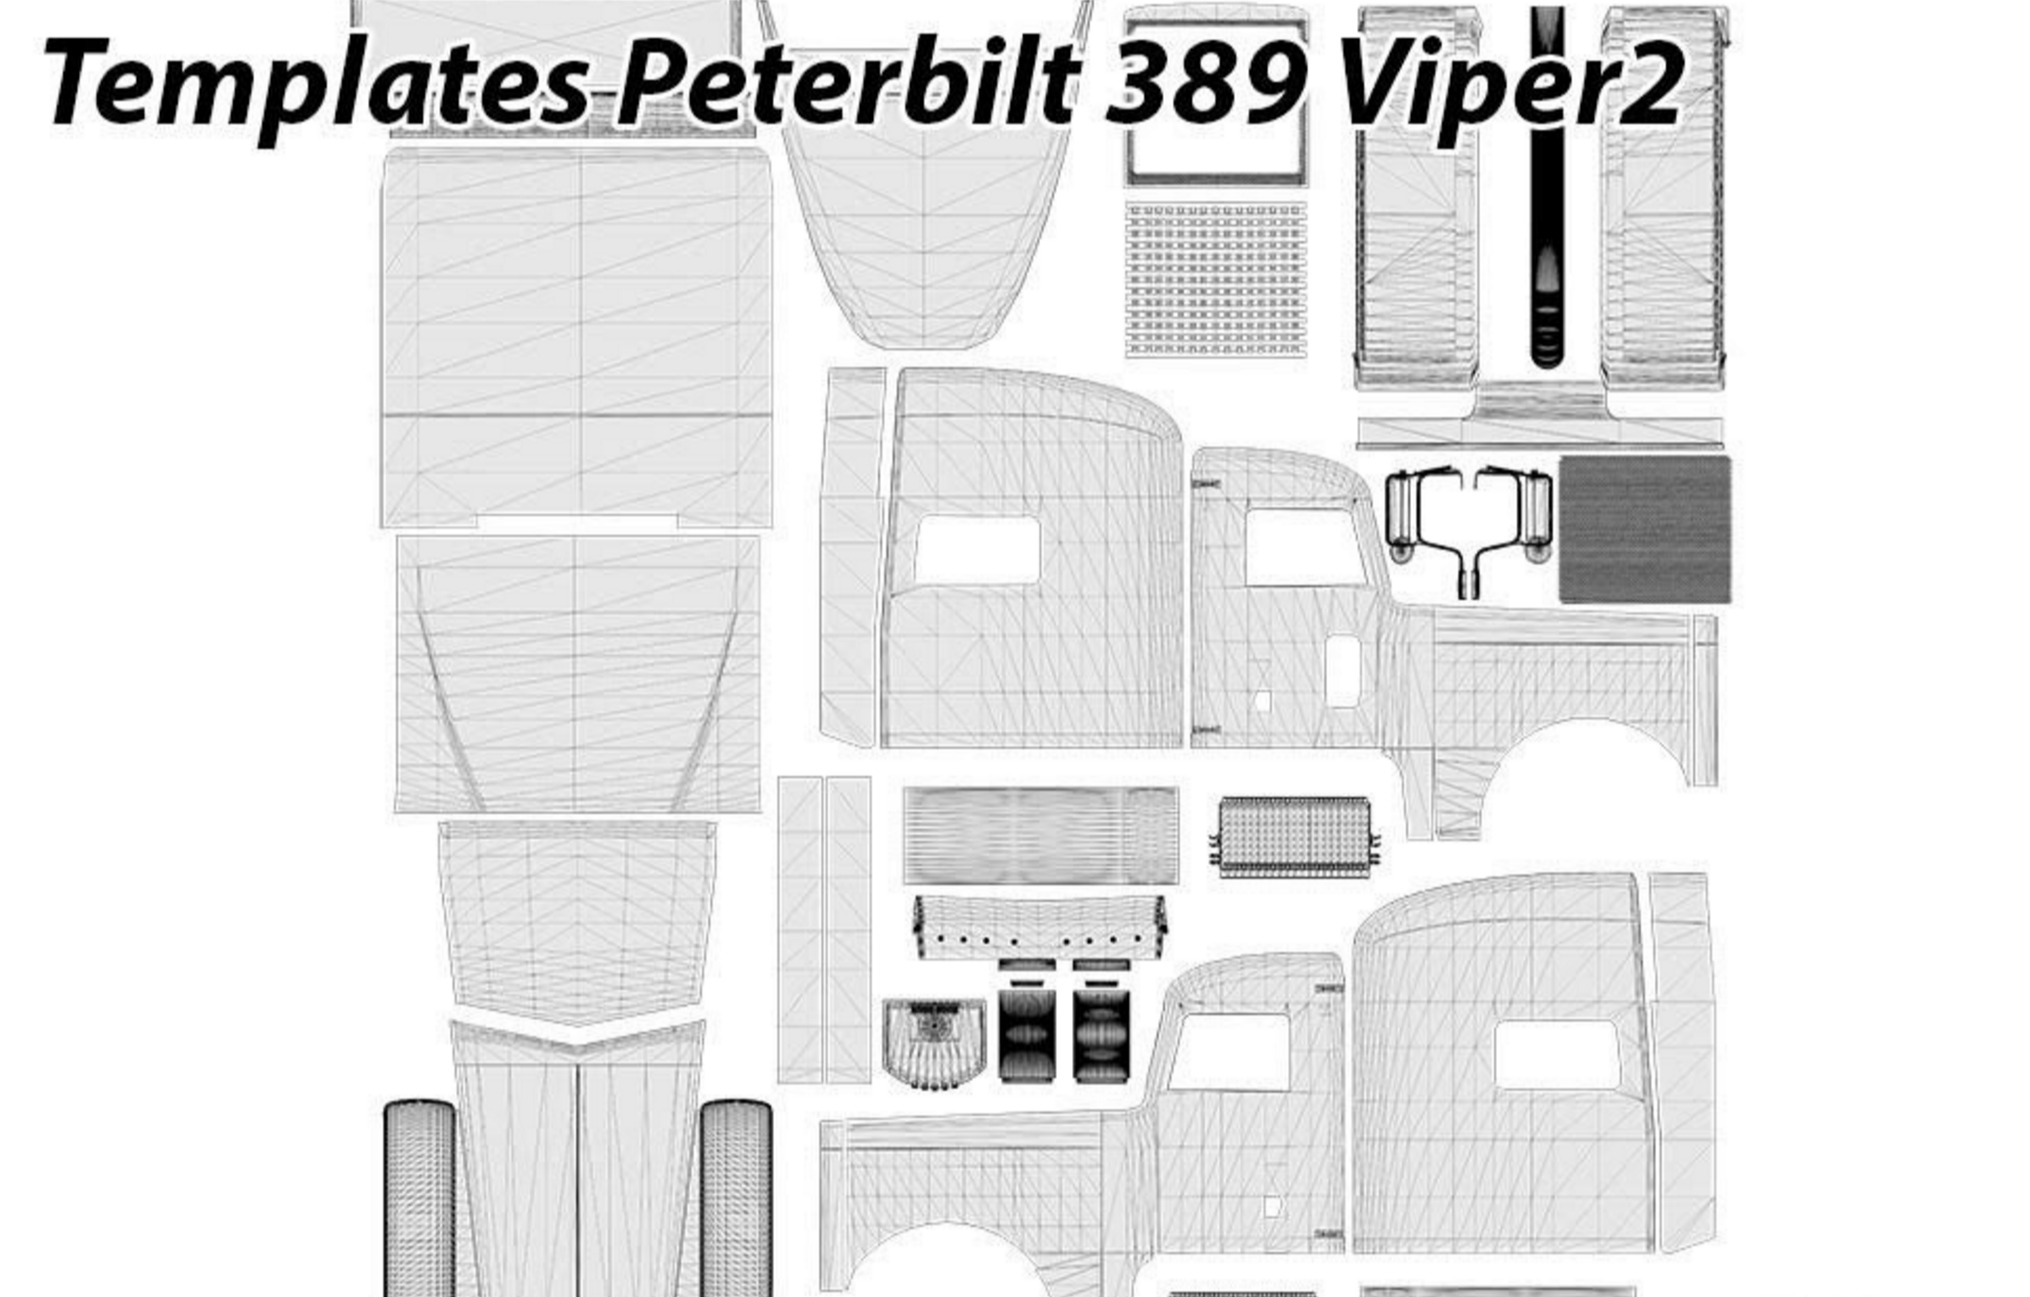 Peterbilt 389 Viper2 Templates (2)